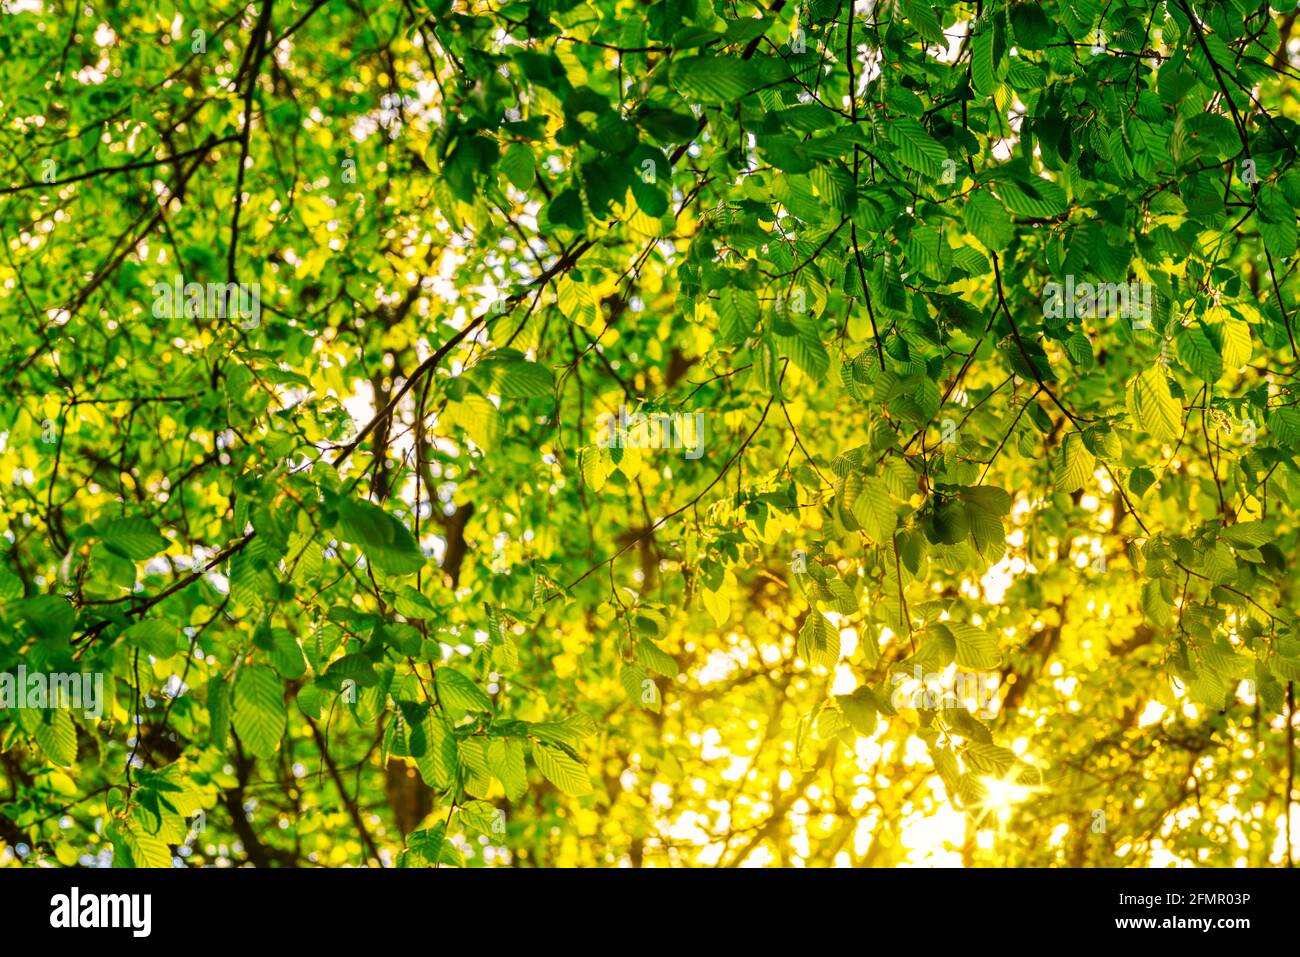 raggi dorati di luce solare che brillano attraverso foglie verdi fresche e lussureggianti su albero Foto Stock